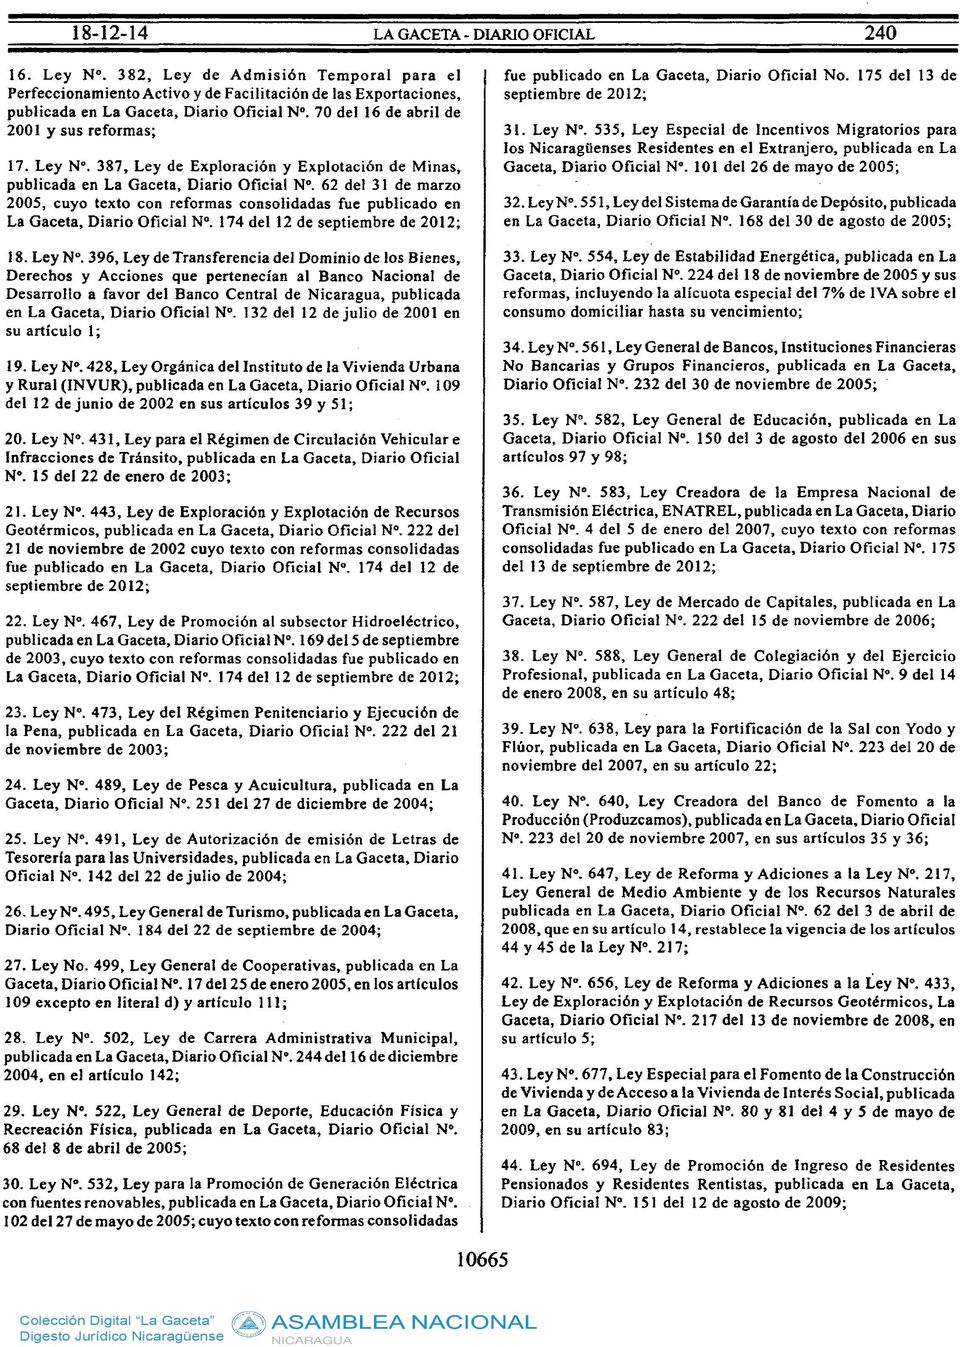 62 del 31 de marzo 2005, cuyo texto con reformas consolidadas fue publicado en La Gaceta, Diario Oficial Nº. 174 del 12 de septiembre de 2012; 18. Ley Nº.